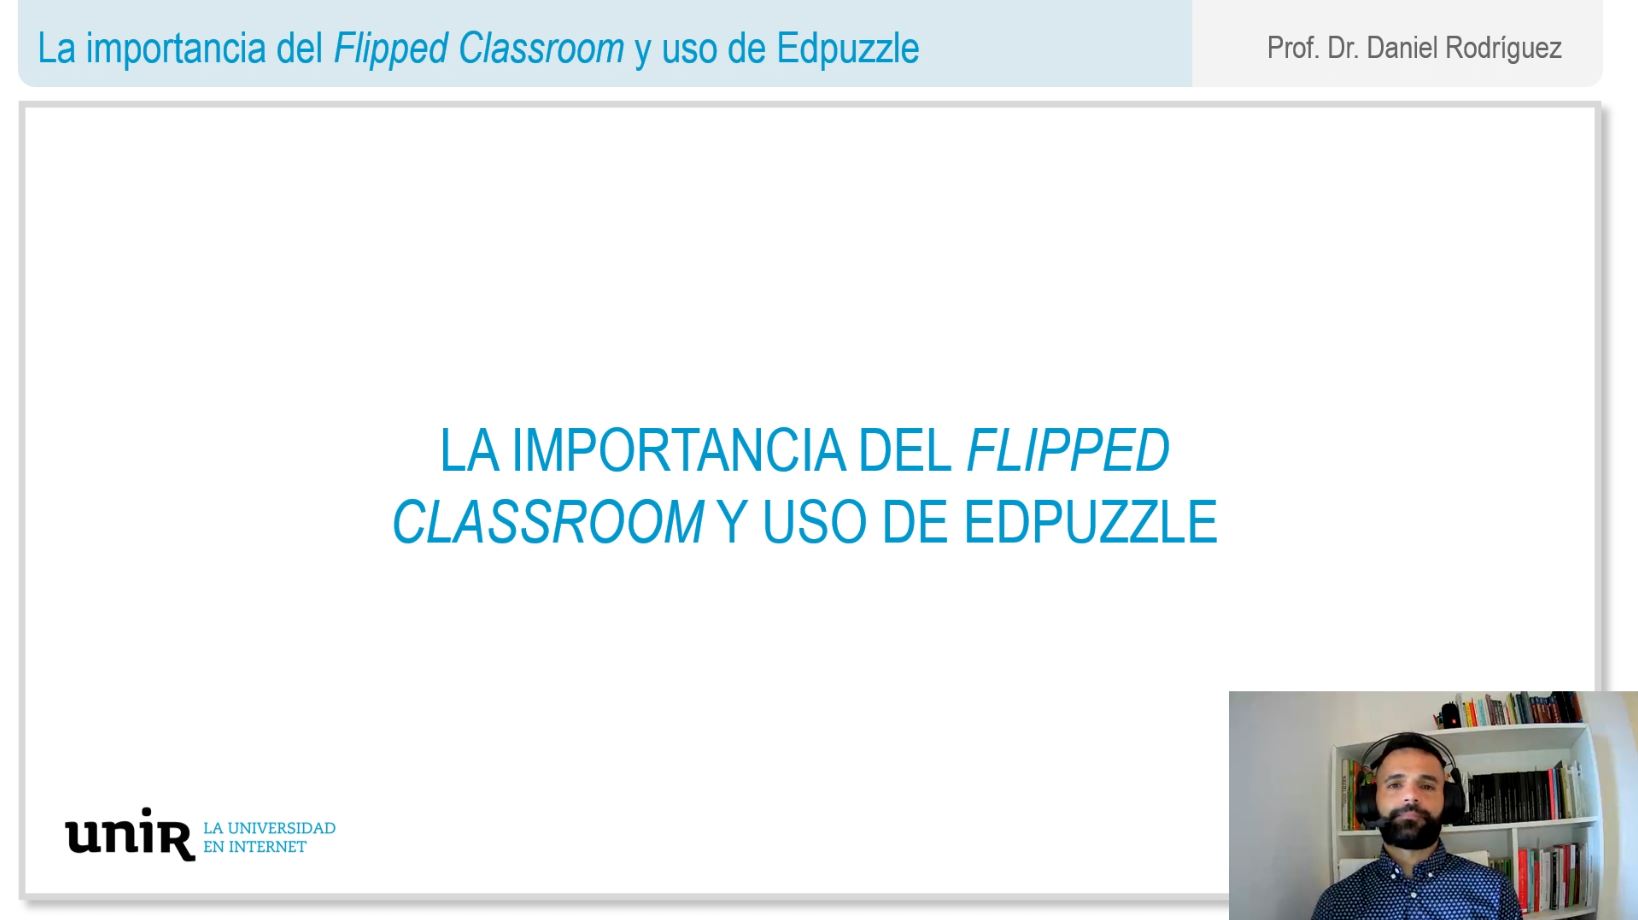 La-importancia-del-flipped-classroom-y-uso-de-Edpuzzle